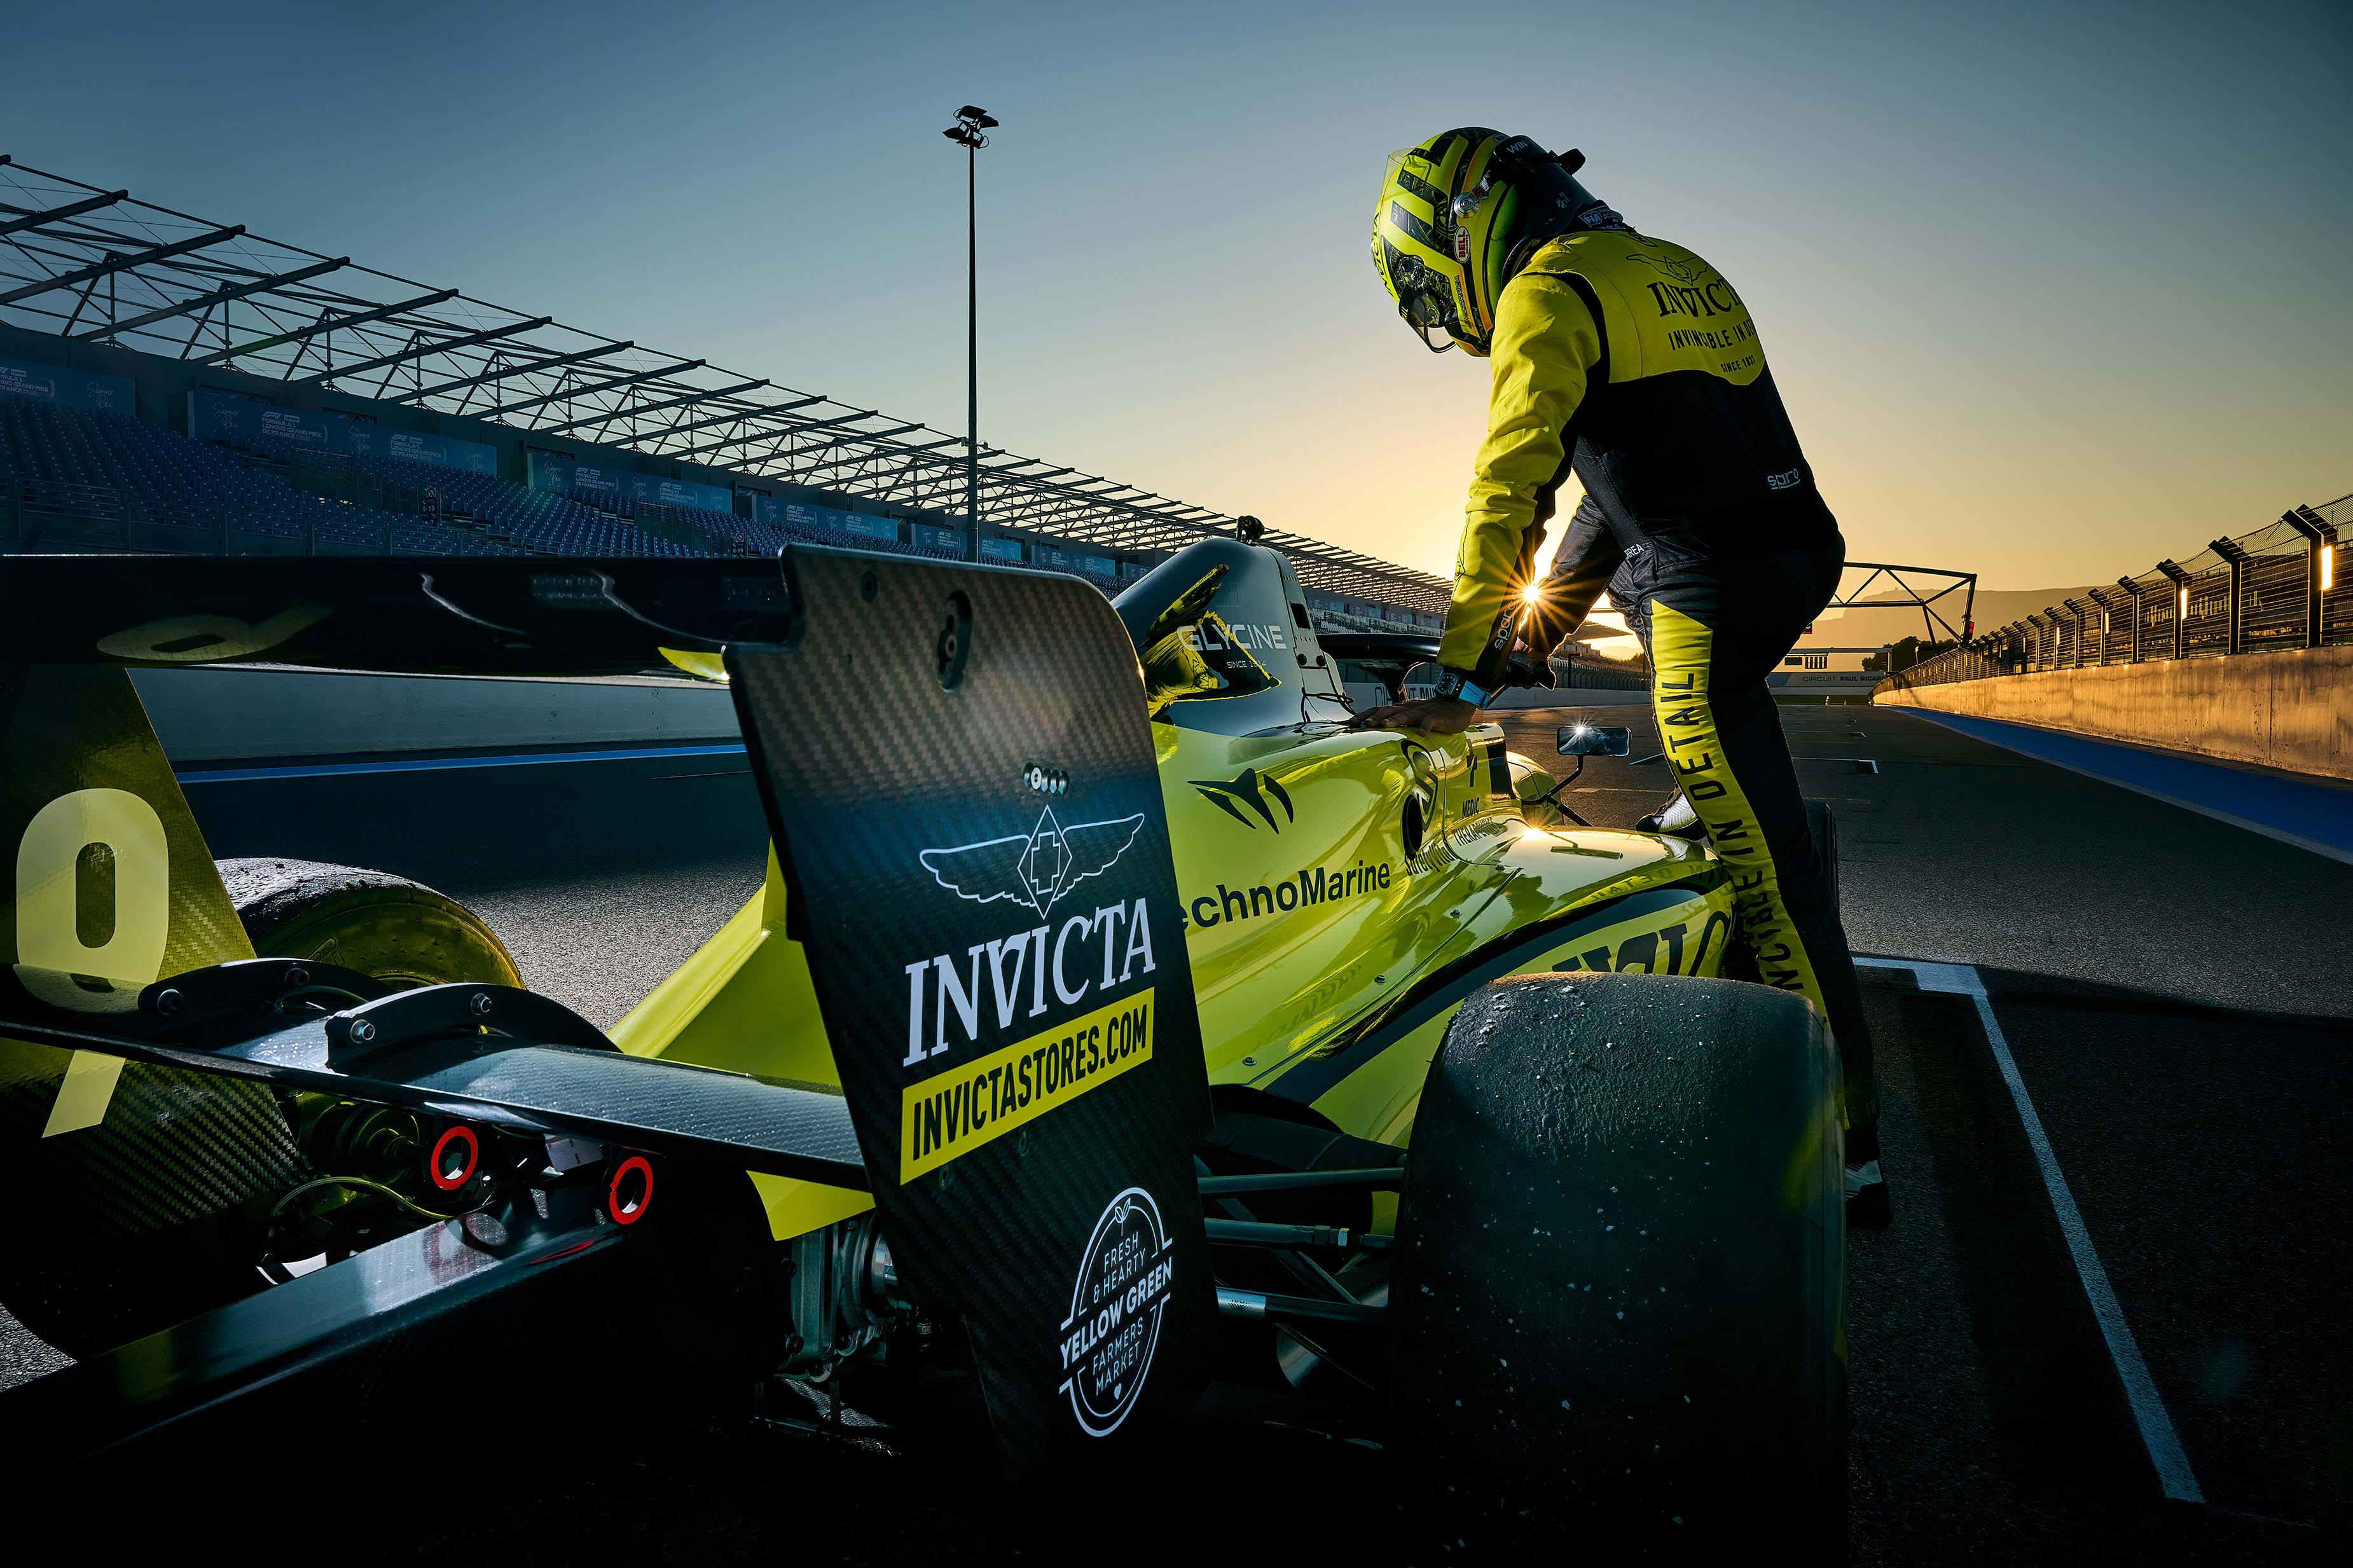 Juan Manuel Correa steps into a Formule 2 racing car Invicta